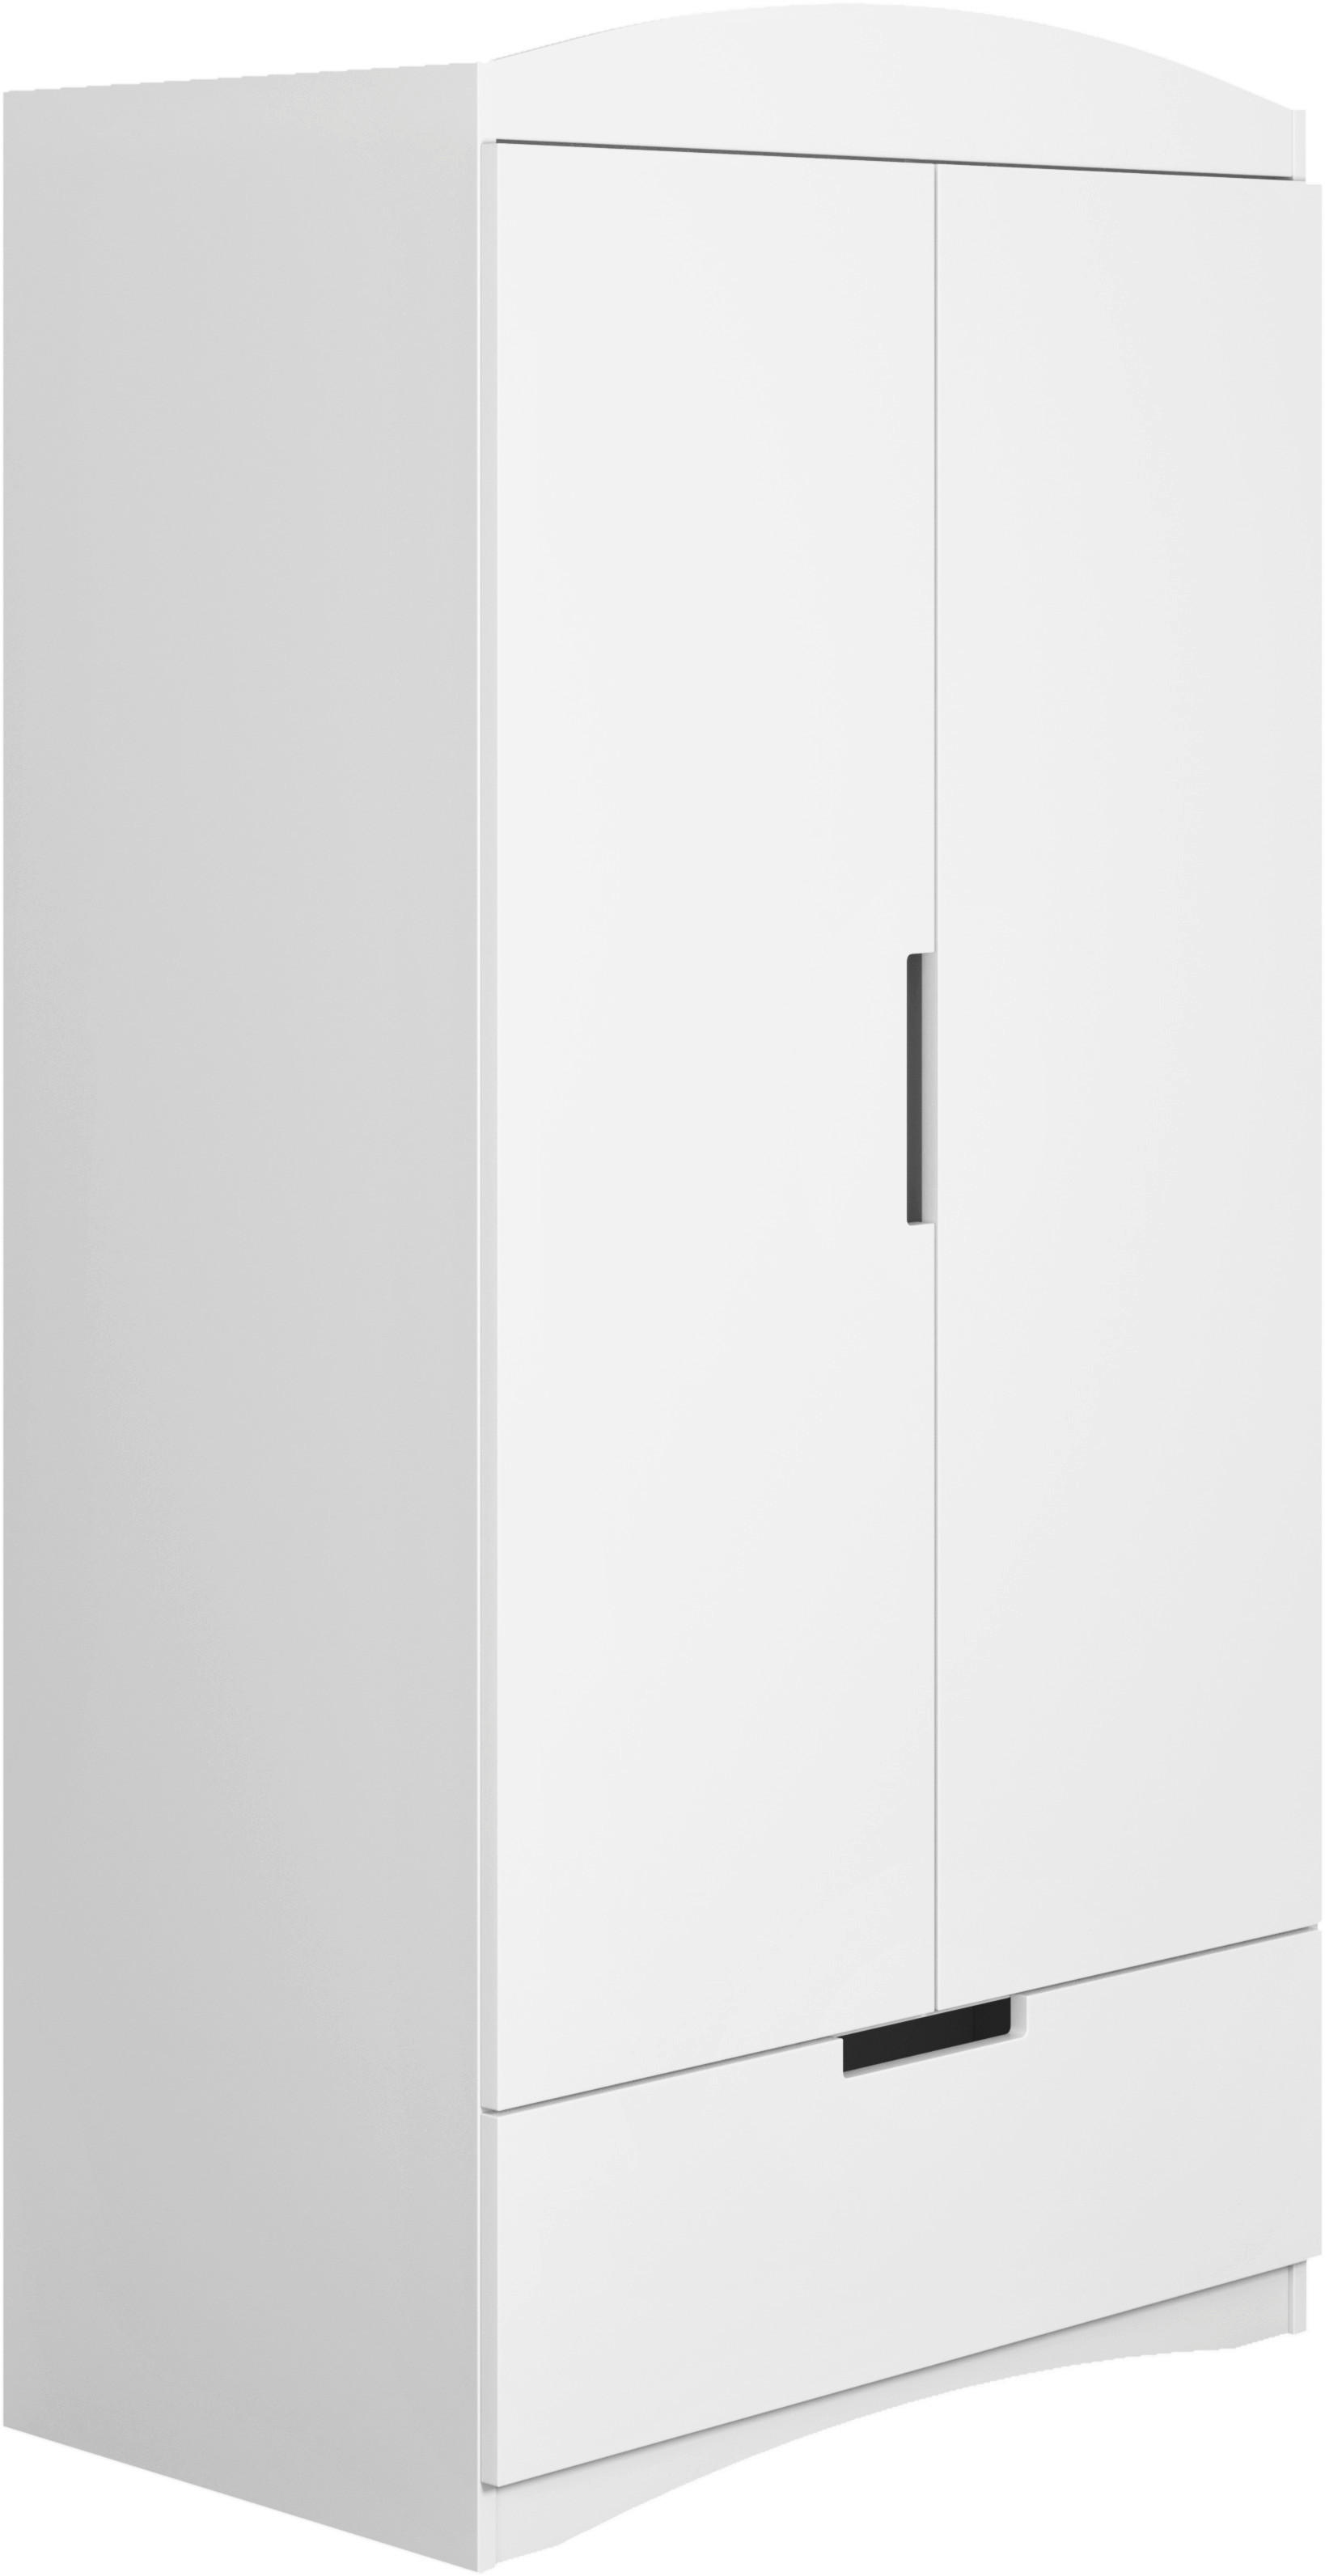 KINDERKLEIDERSCHRANK Classic Weiß  - Weiß, MODERN, Holzwerkstoff (90/186/58cm) - MID.YOU